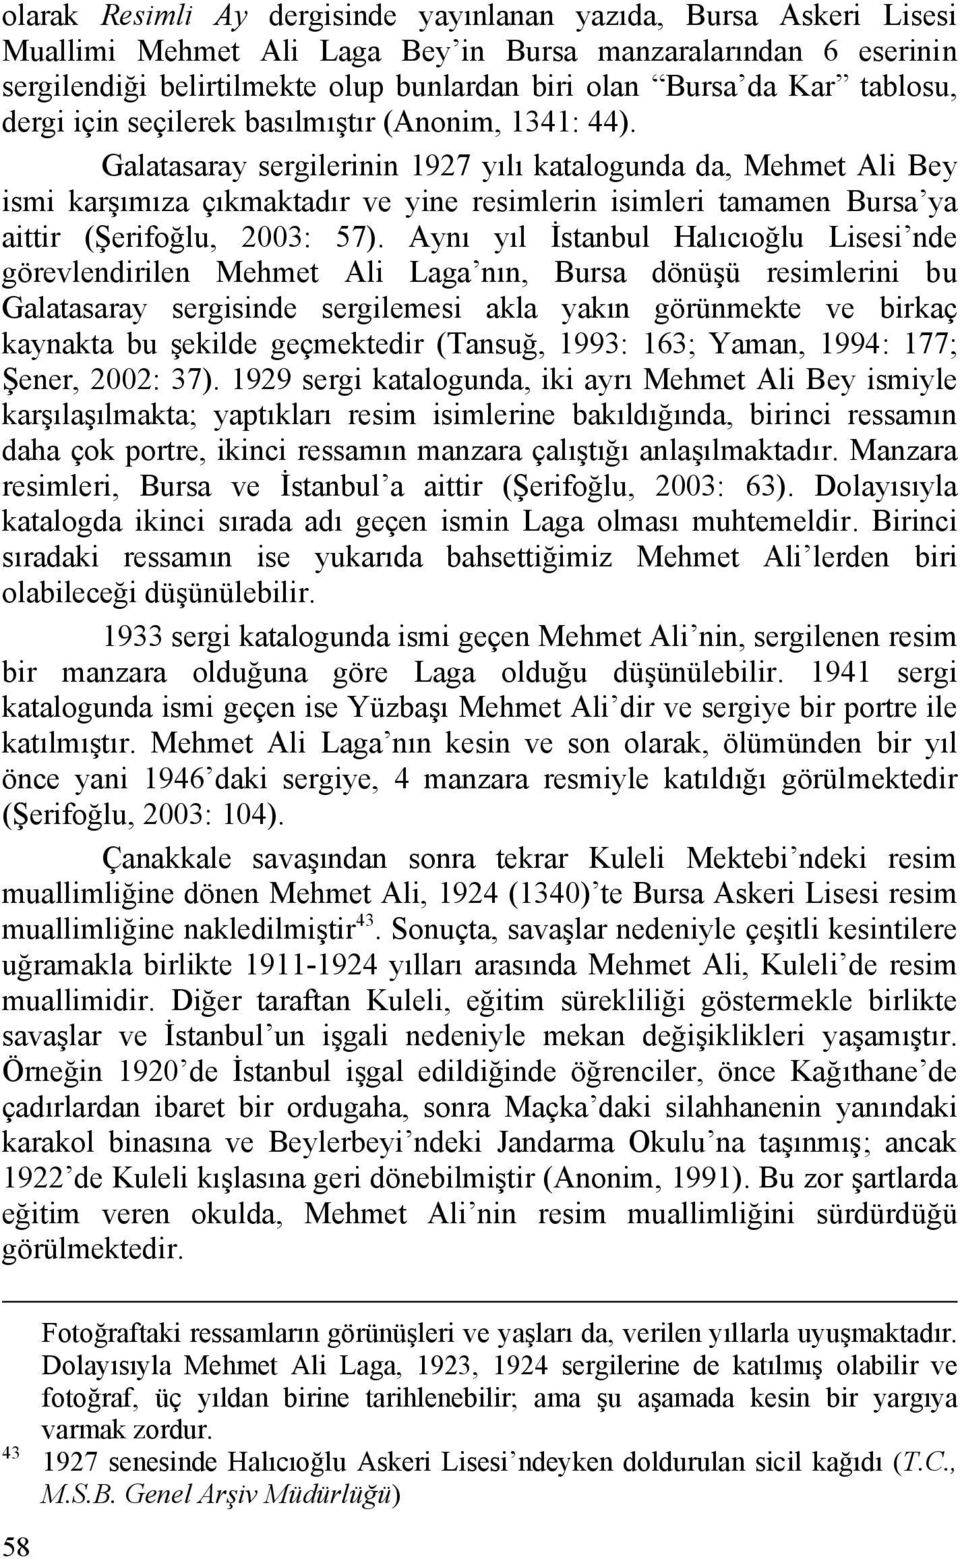 Galatasaray sergilerinin 1927 yılı katalogunda da, Mehmet Ali Bey ismi karşımıza çıkmaktadır ve yine resimlerin isimleri tamamen Bursa ya aittir (Şerifoğlu, 2003: 57).